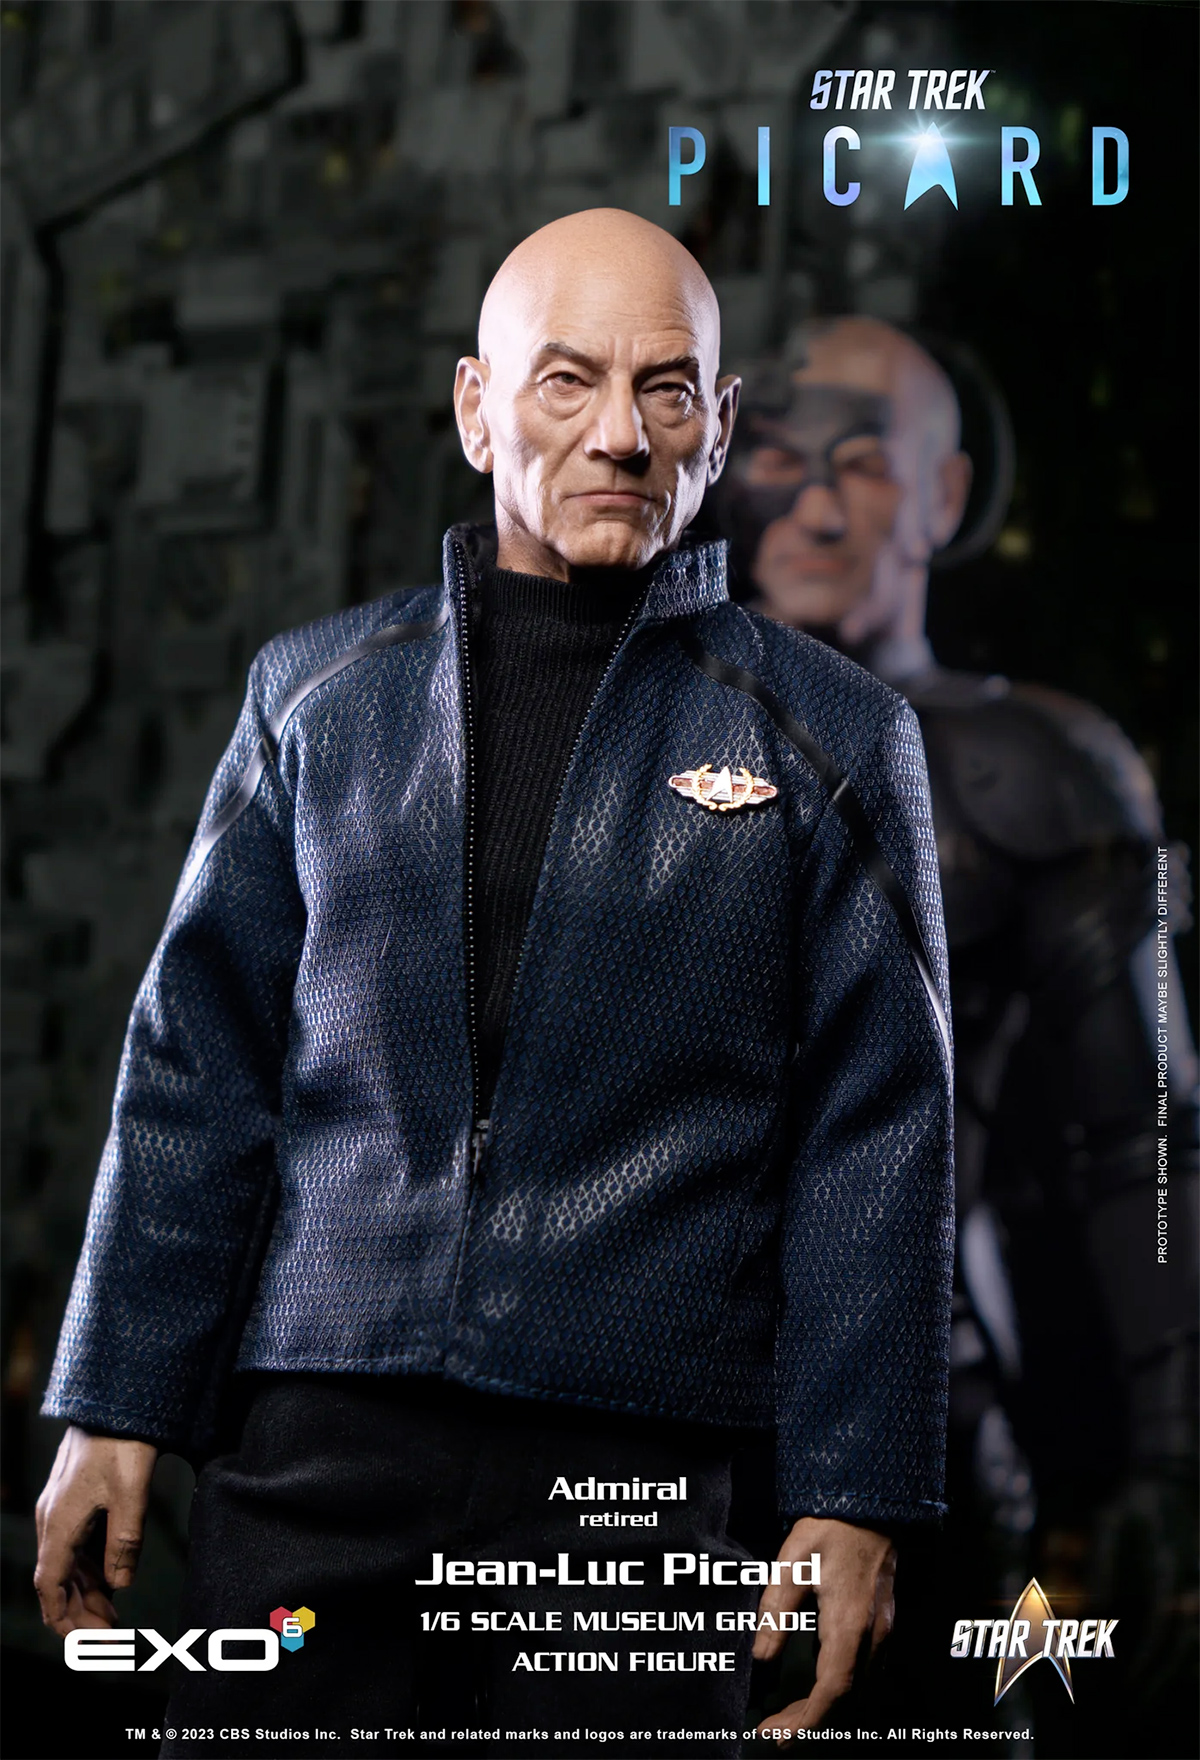 Almirante Jean-Luc Picard - Action Figure Perfeita 1:6 da Série Star Trek: Picard